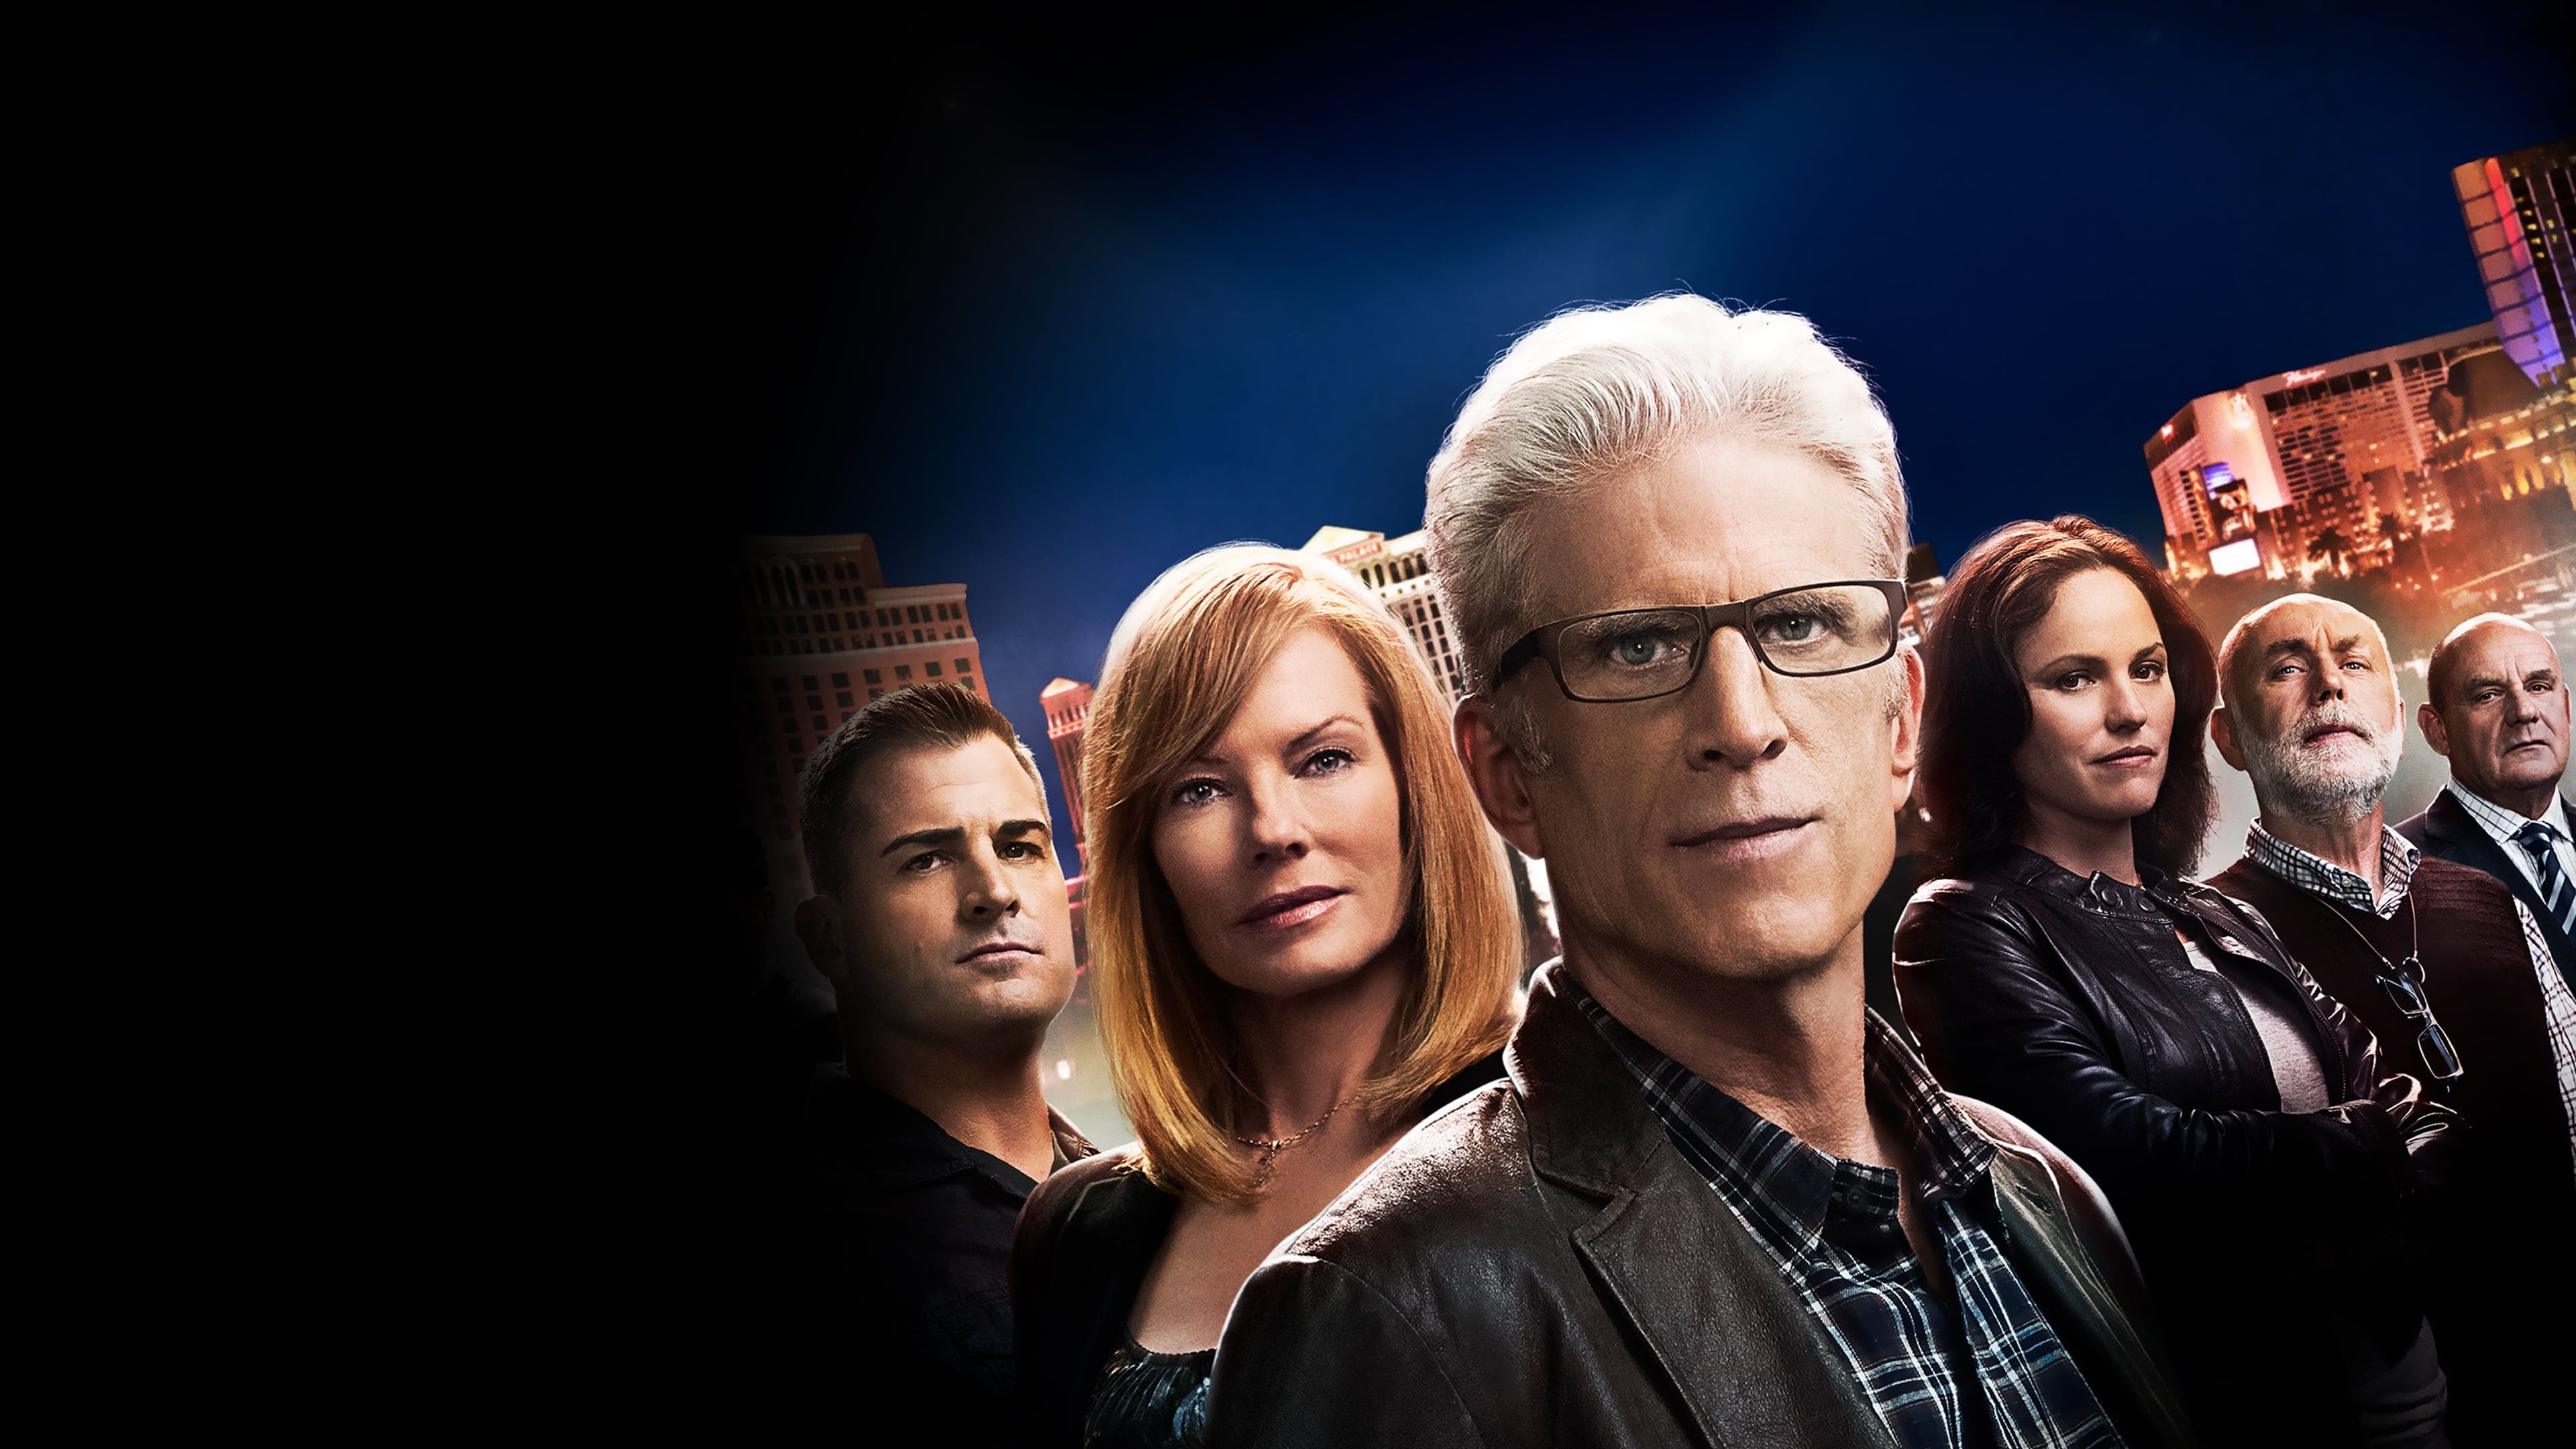 CSI: Crime Scene Investigation - Season 15 Episode 12